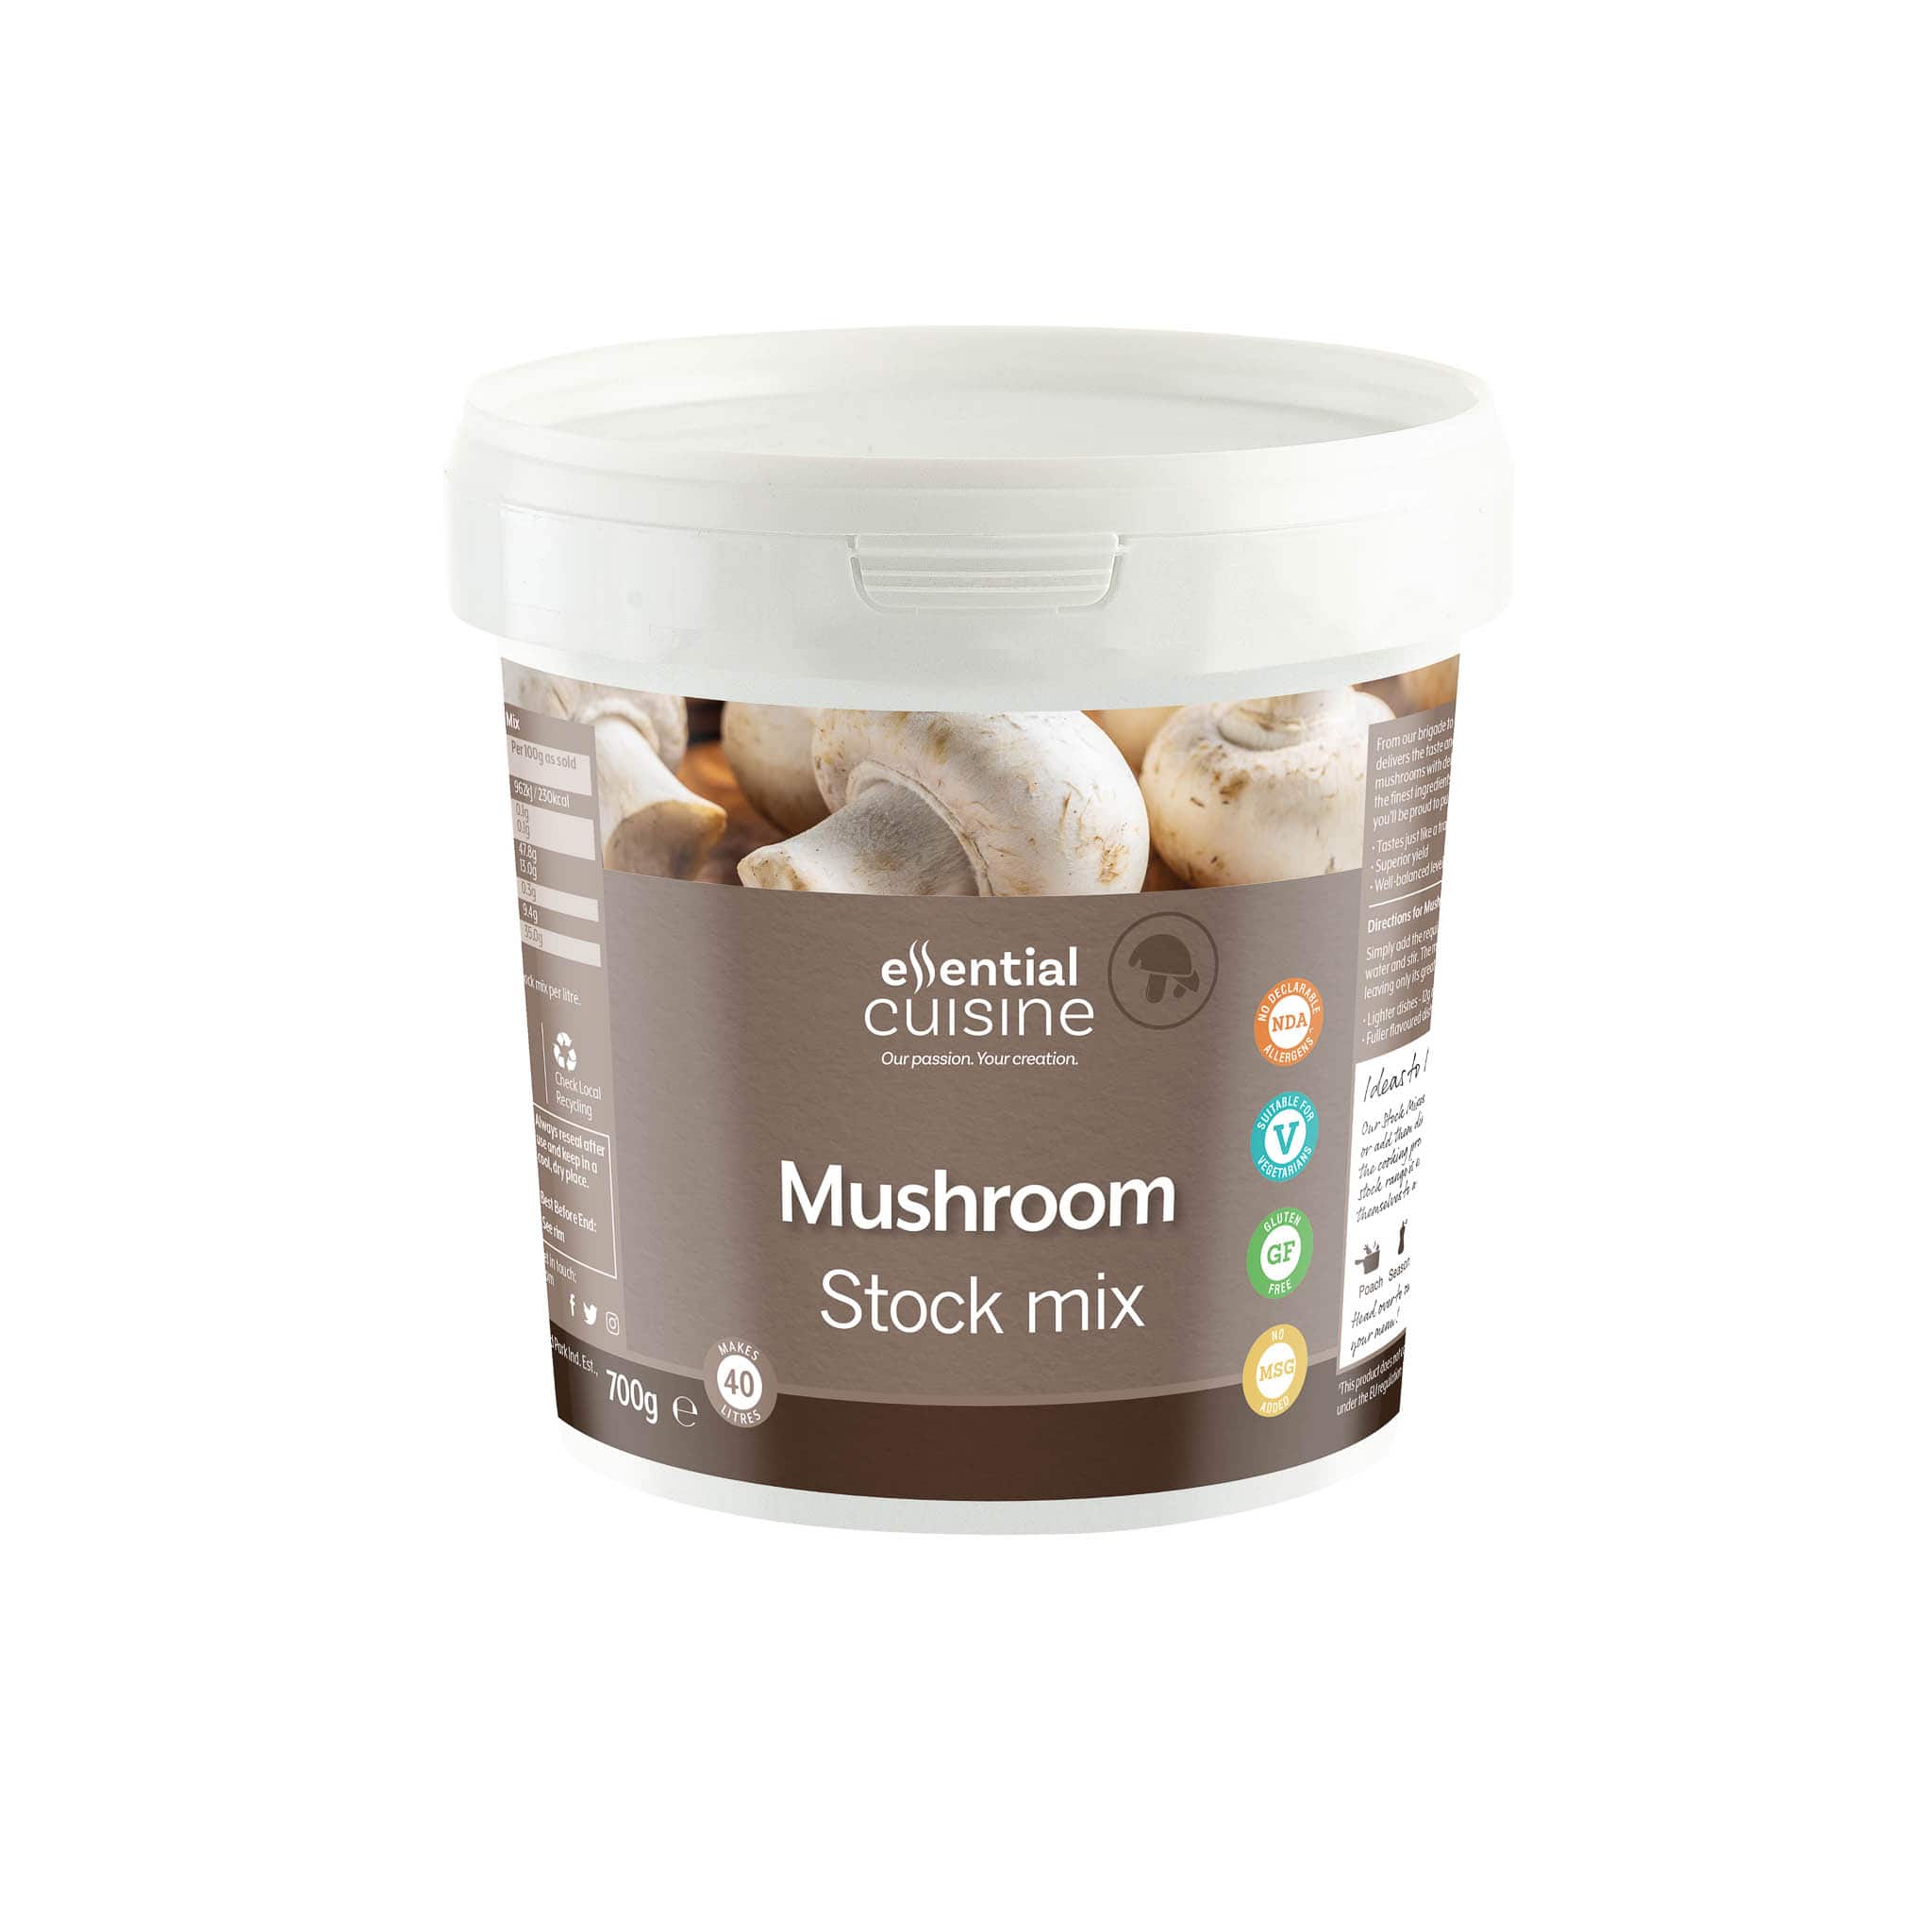 Essential Cuisine Mushroom Stock Mix 700g